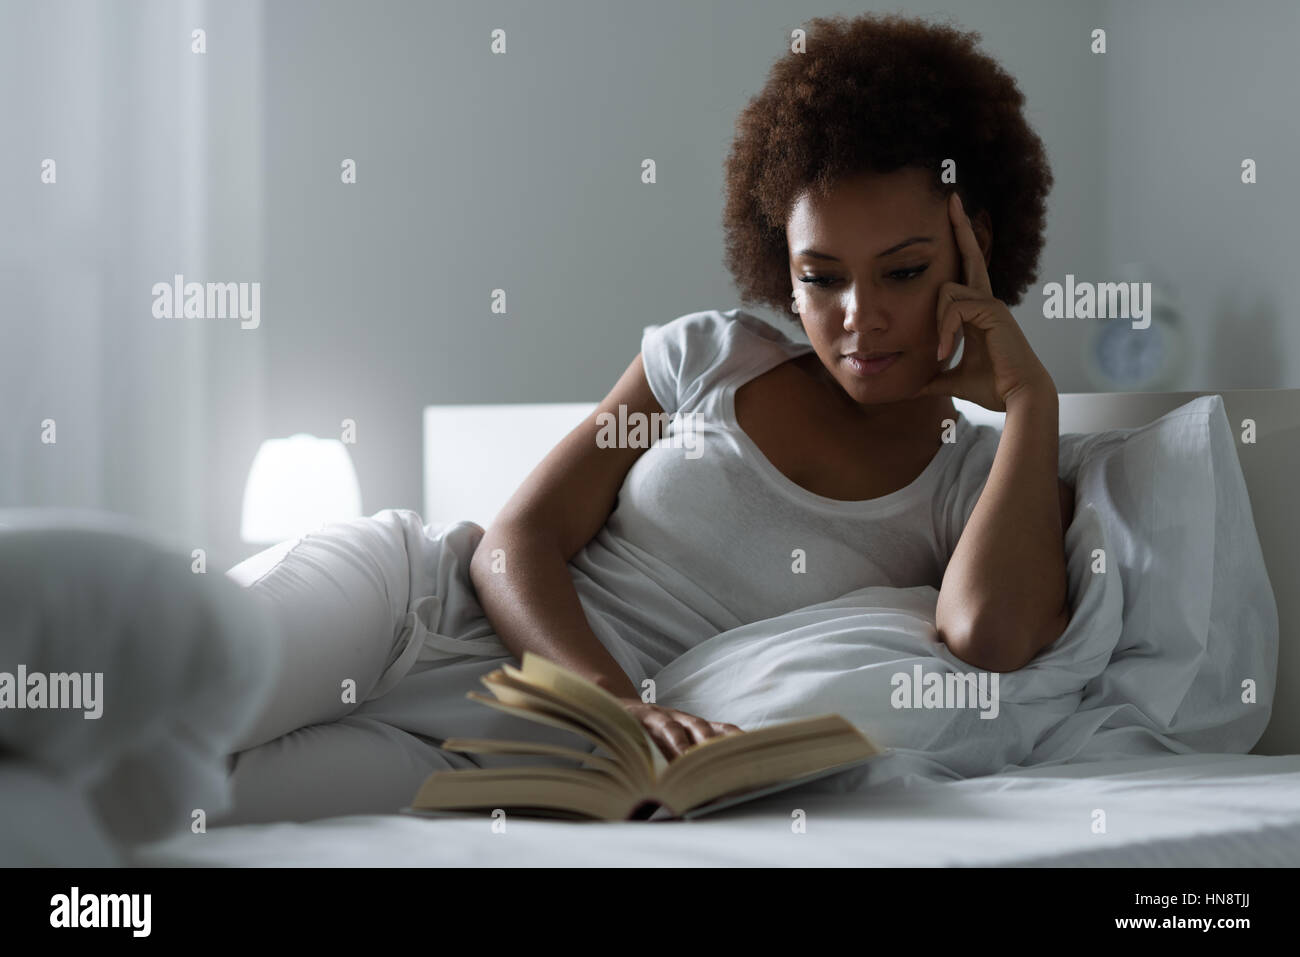 Schöne Frau auf dem Bett liegend, in der Nacht, sie ist im Bett liegen und lesen eine Buch, Lifestyle und Entspannung Konzept Stockfoto